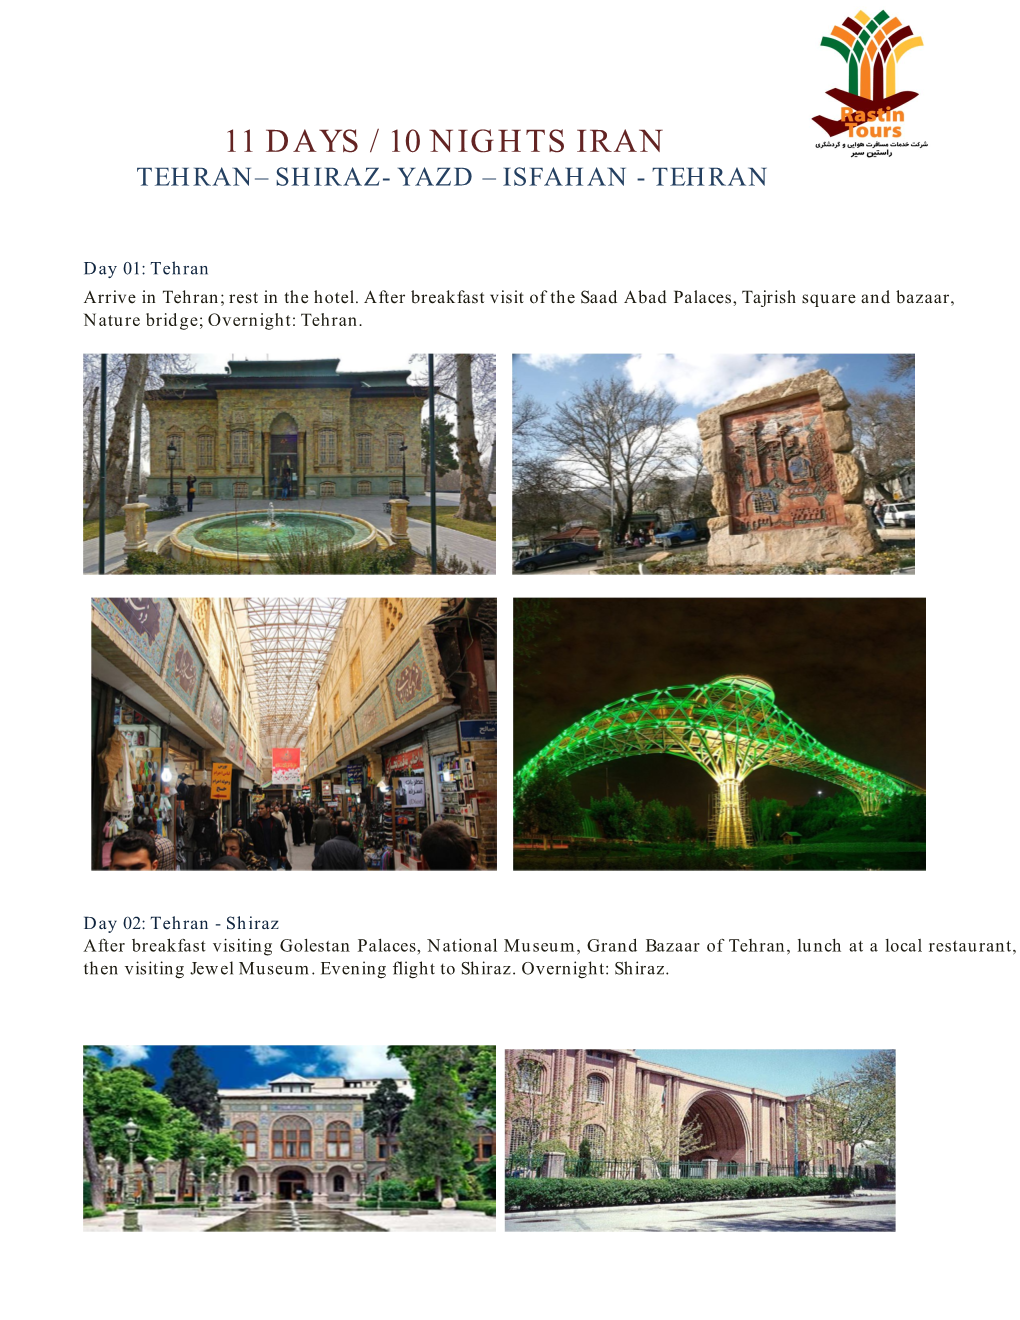 Isfahan - Tehran